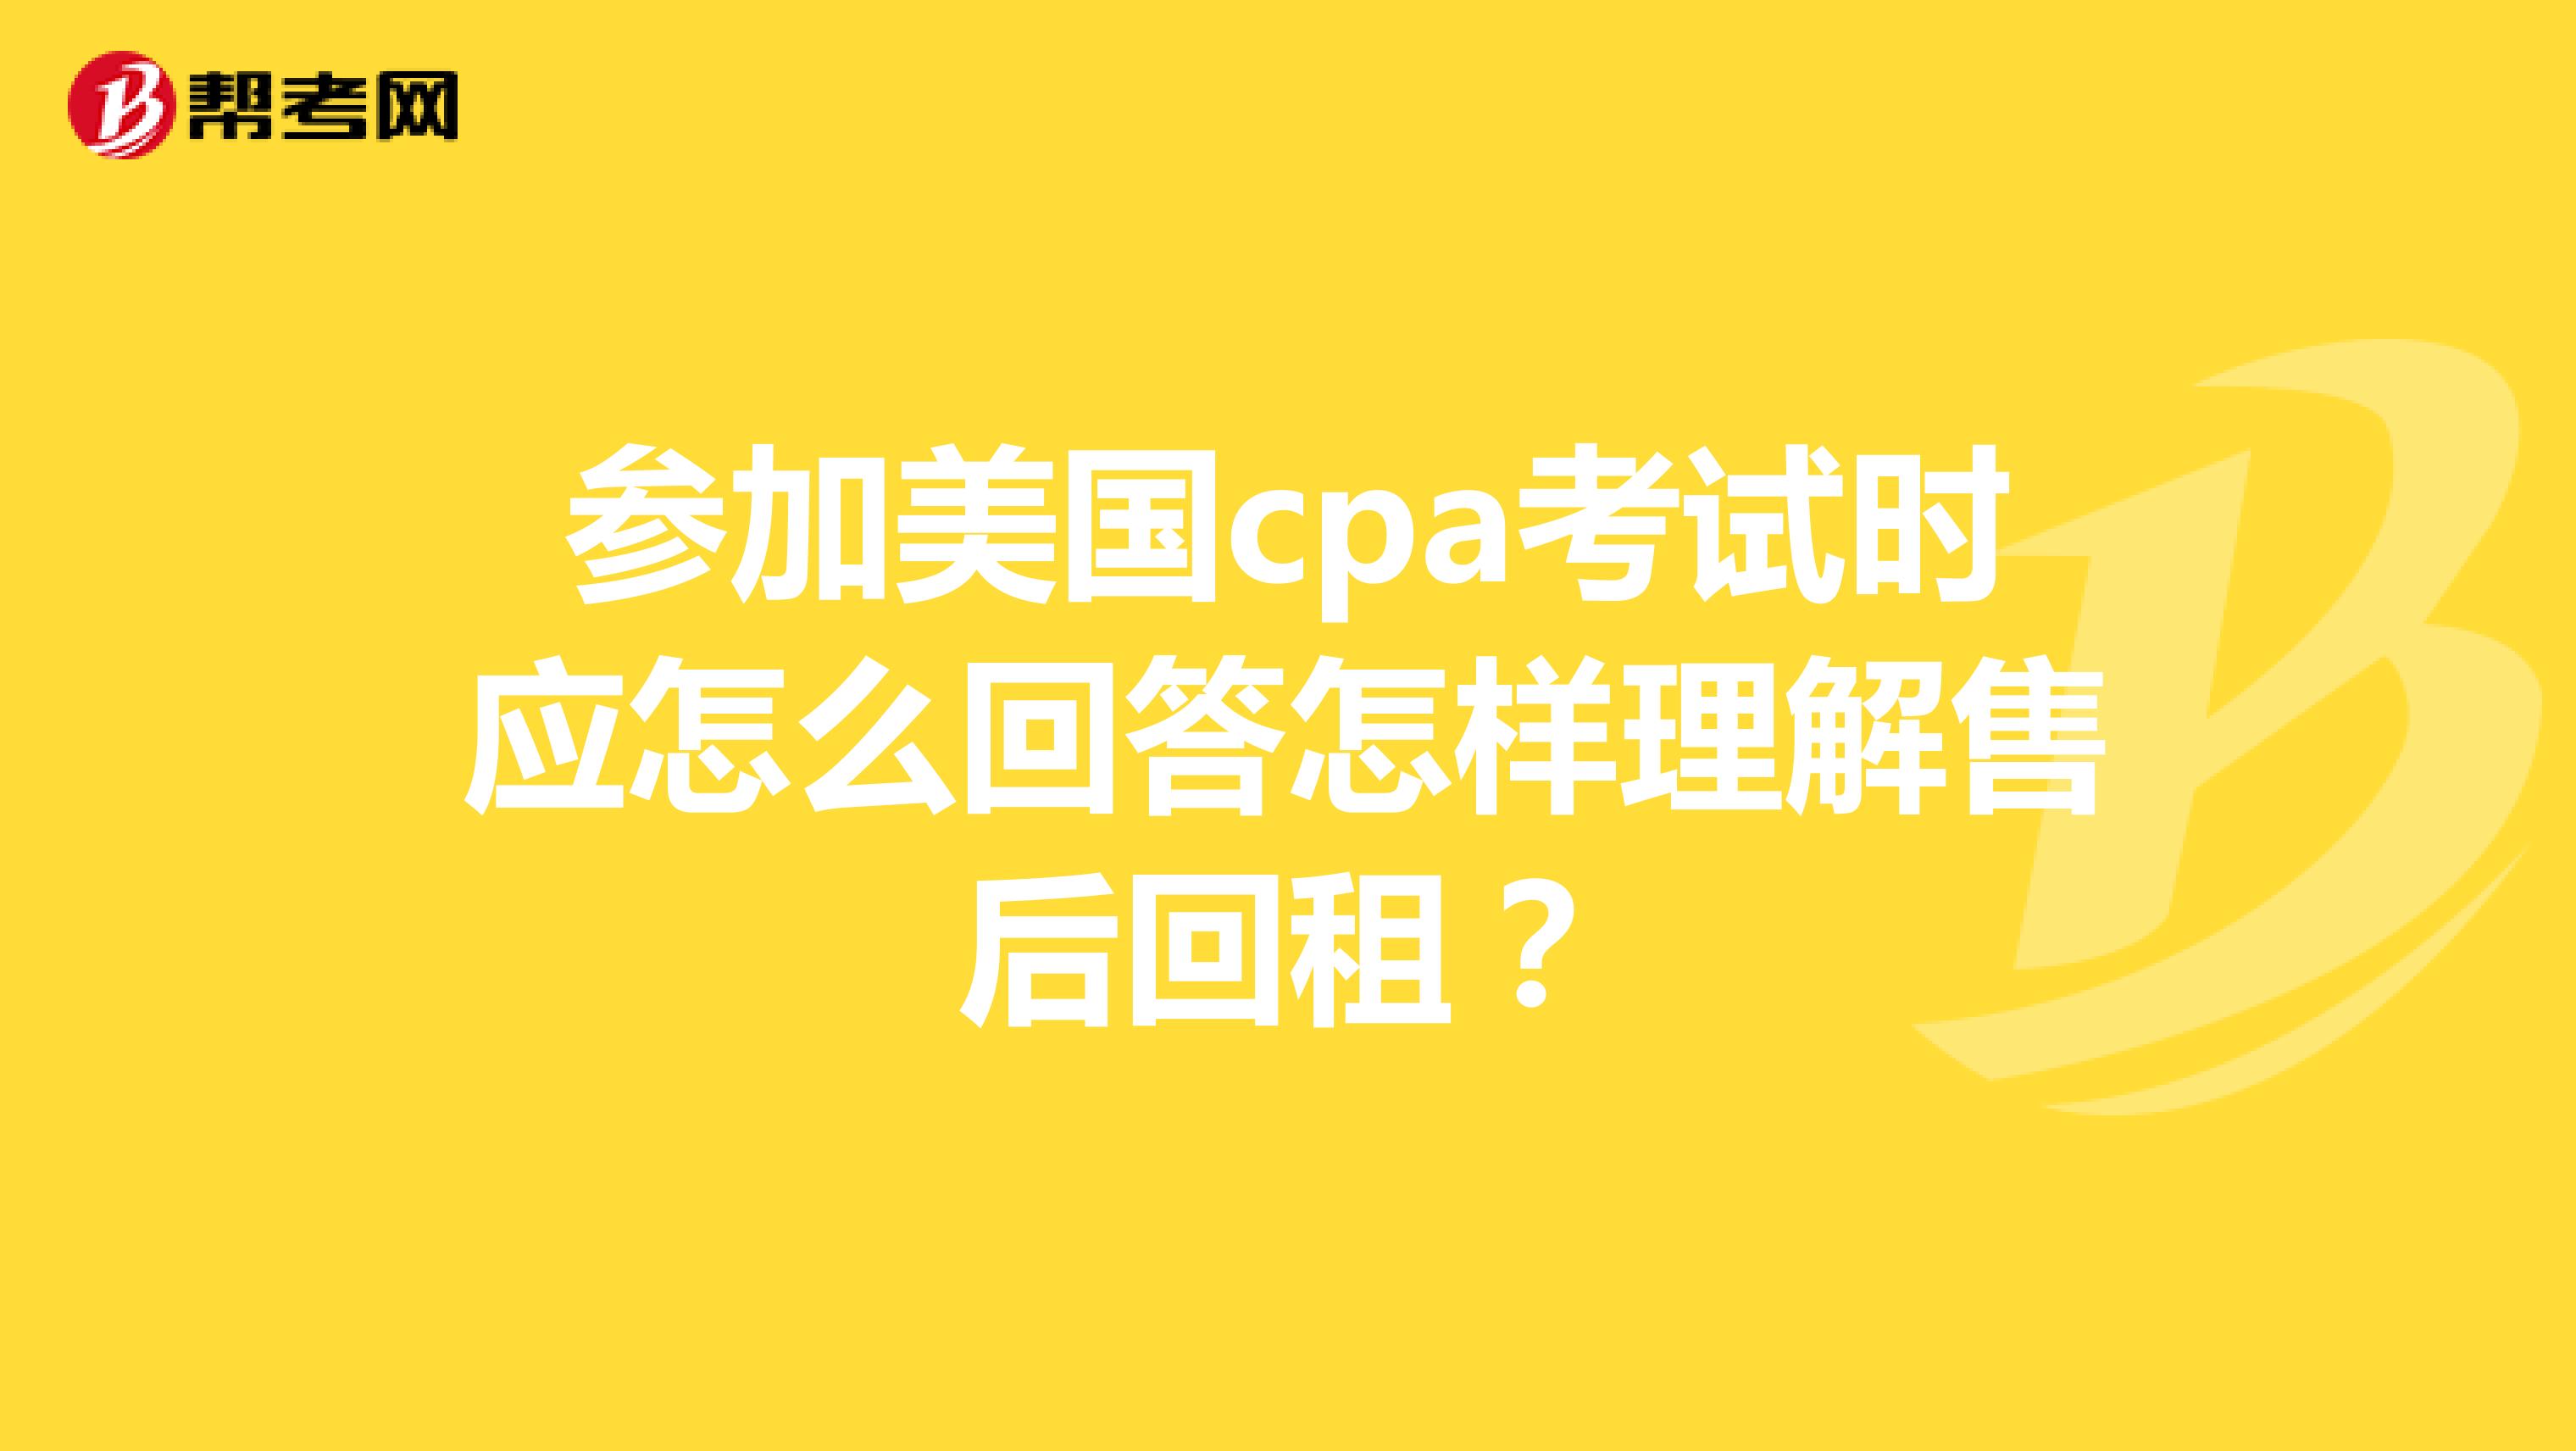 参加美国cpa考试时应怎么回答怎样理解售后回租？